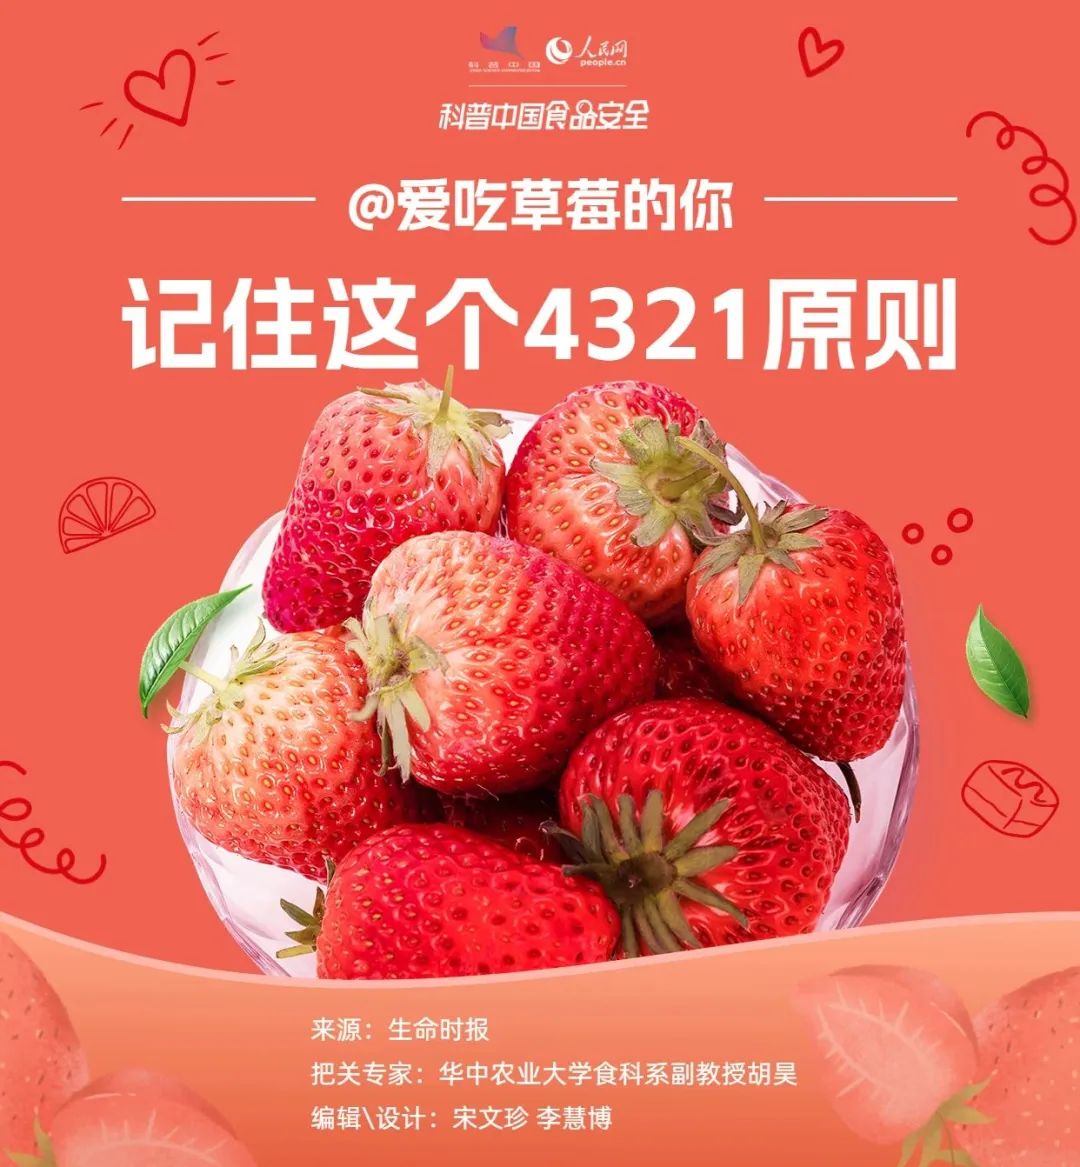 空心草莓是打了激素？“个大”的草莓是因为打了药？解答来了 · 科普中国网